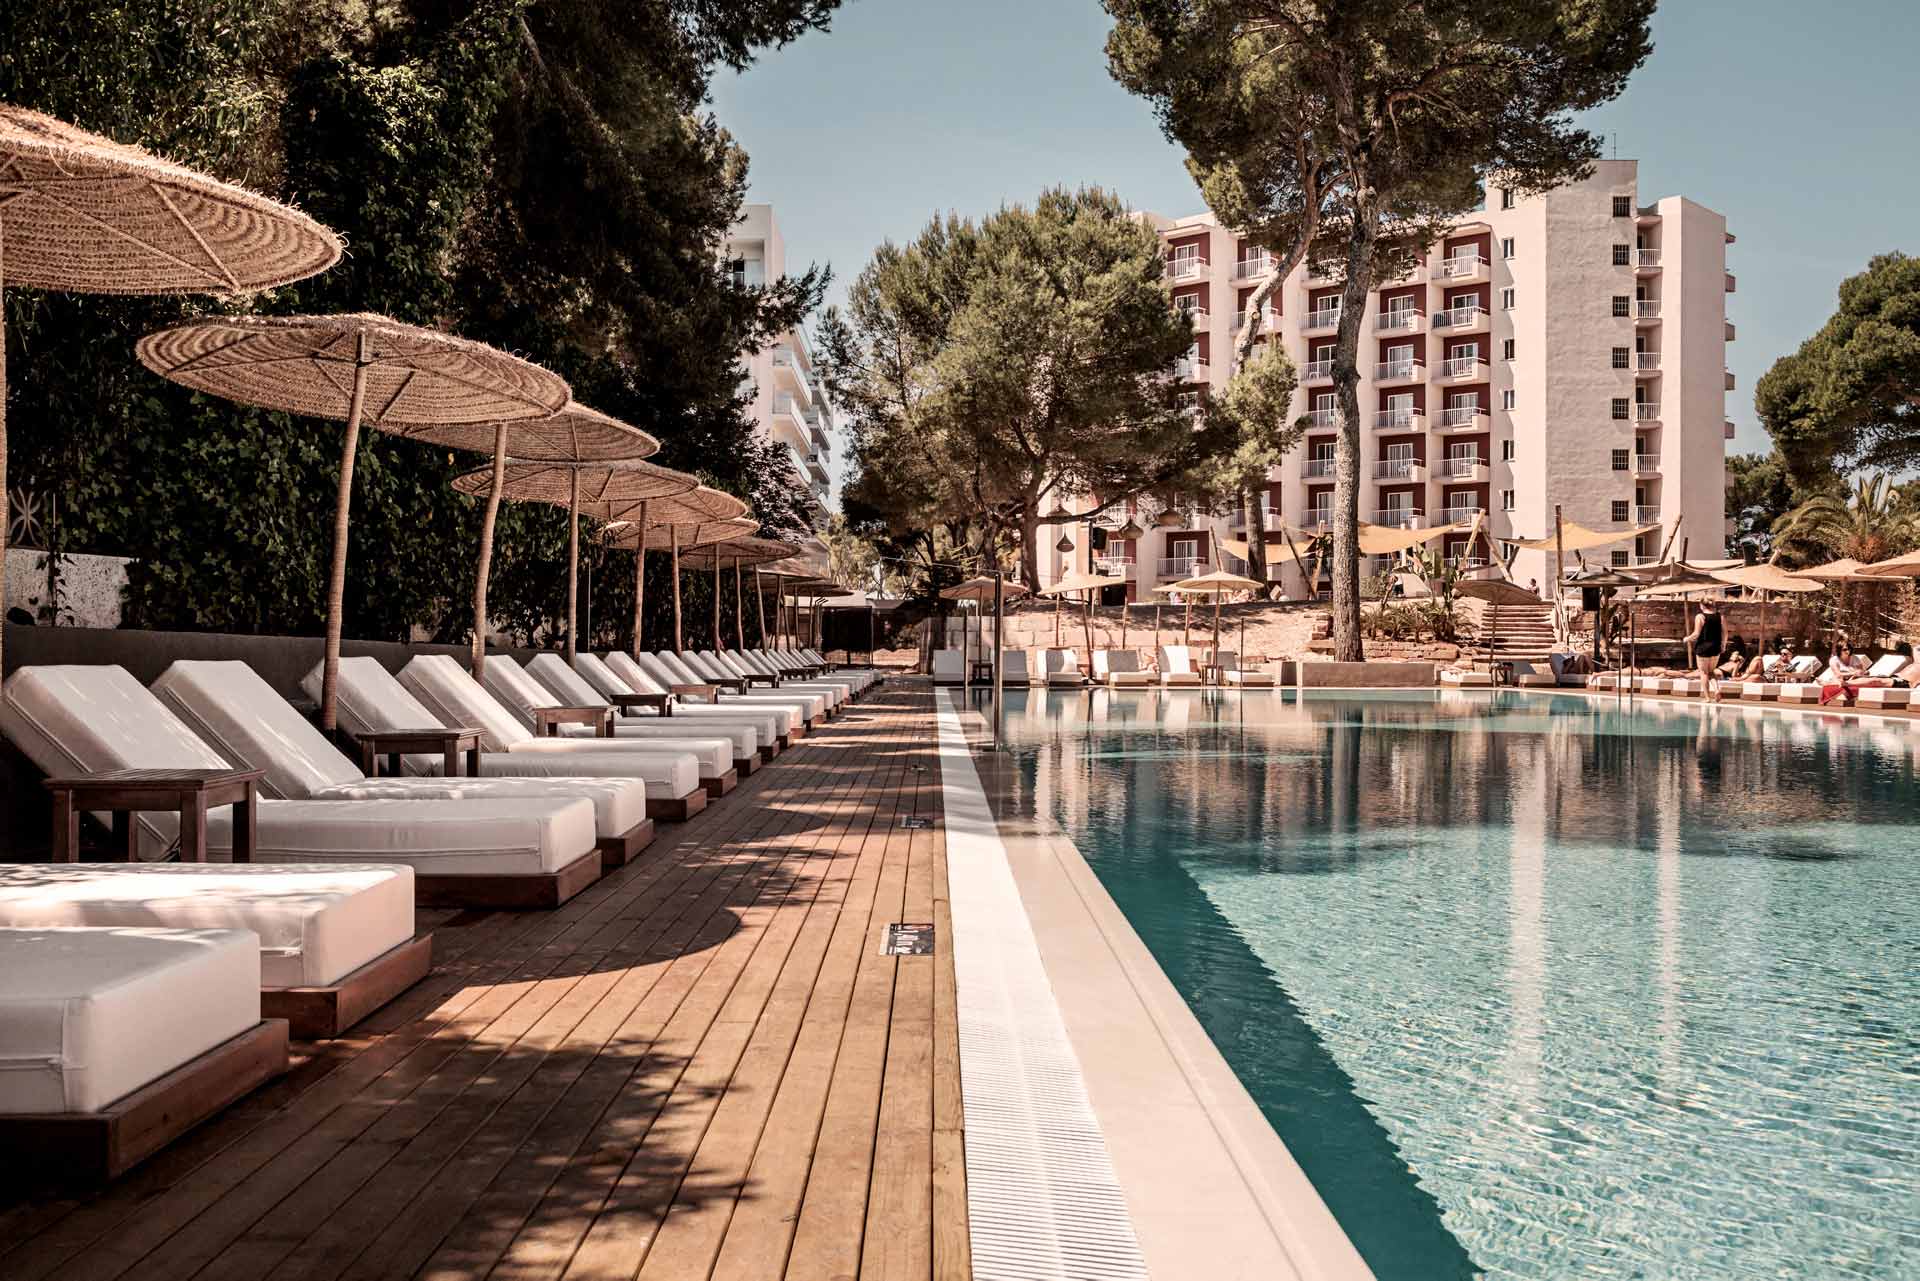 Cook's Club Palma Beach Hotel | Mallorca, Spain | Cook's Club Hotels